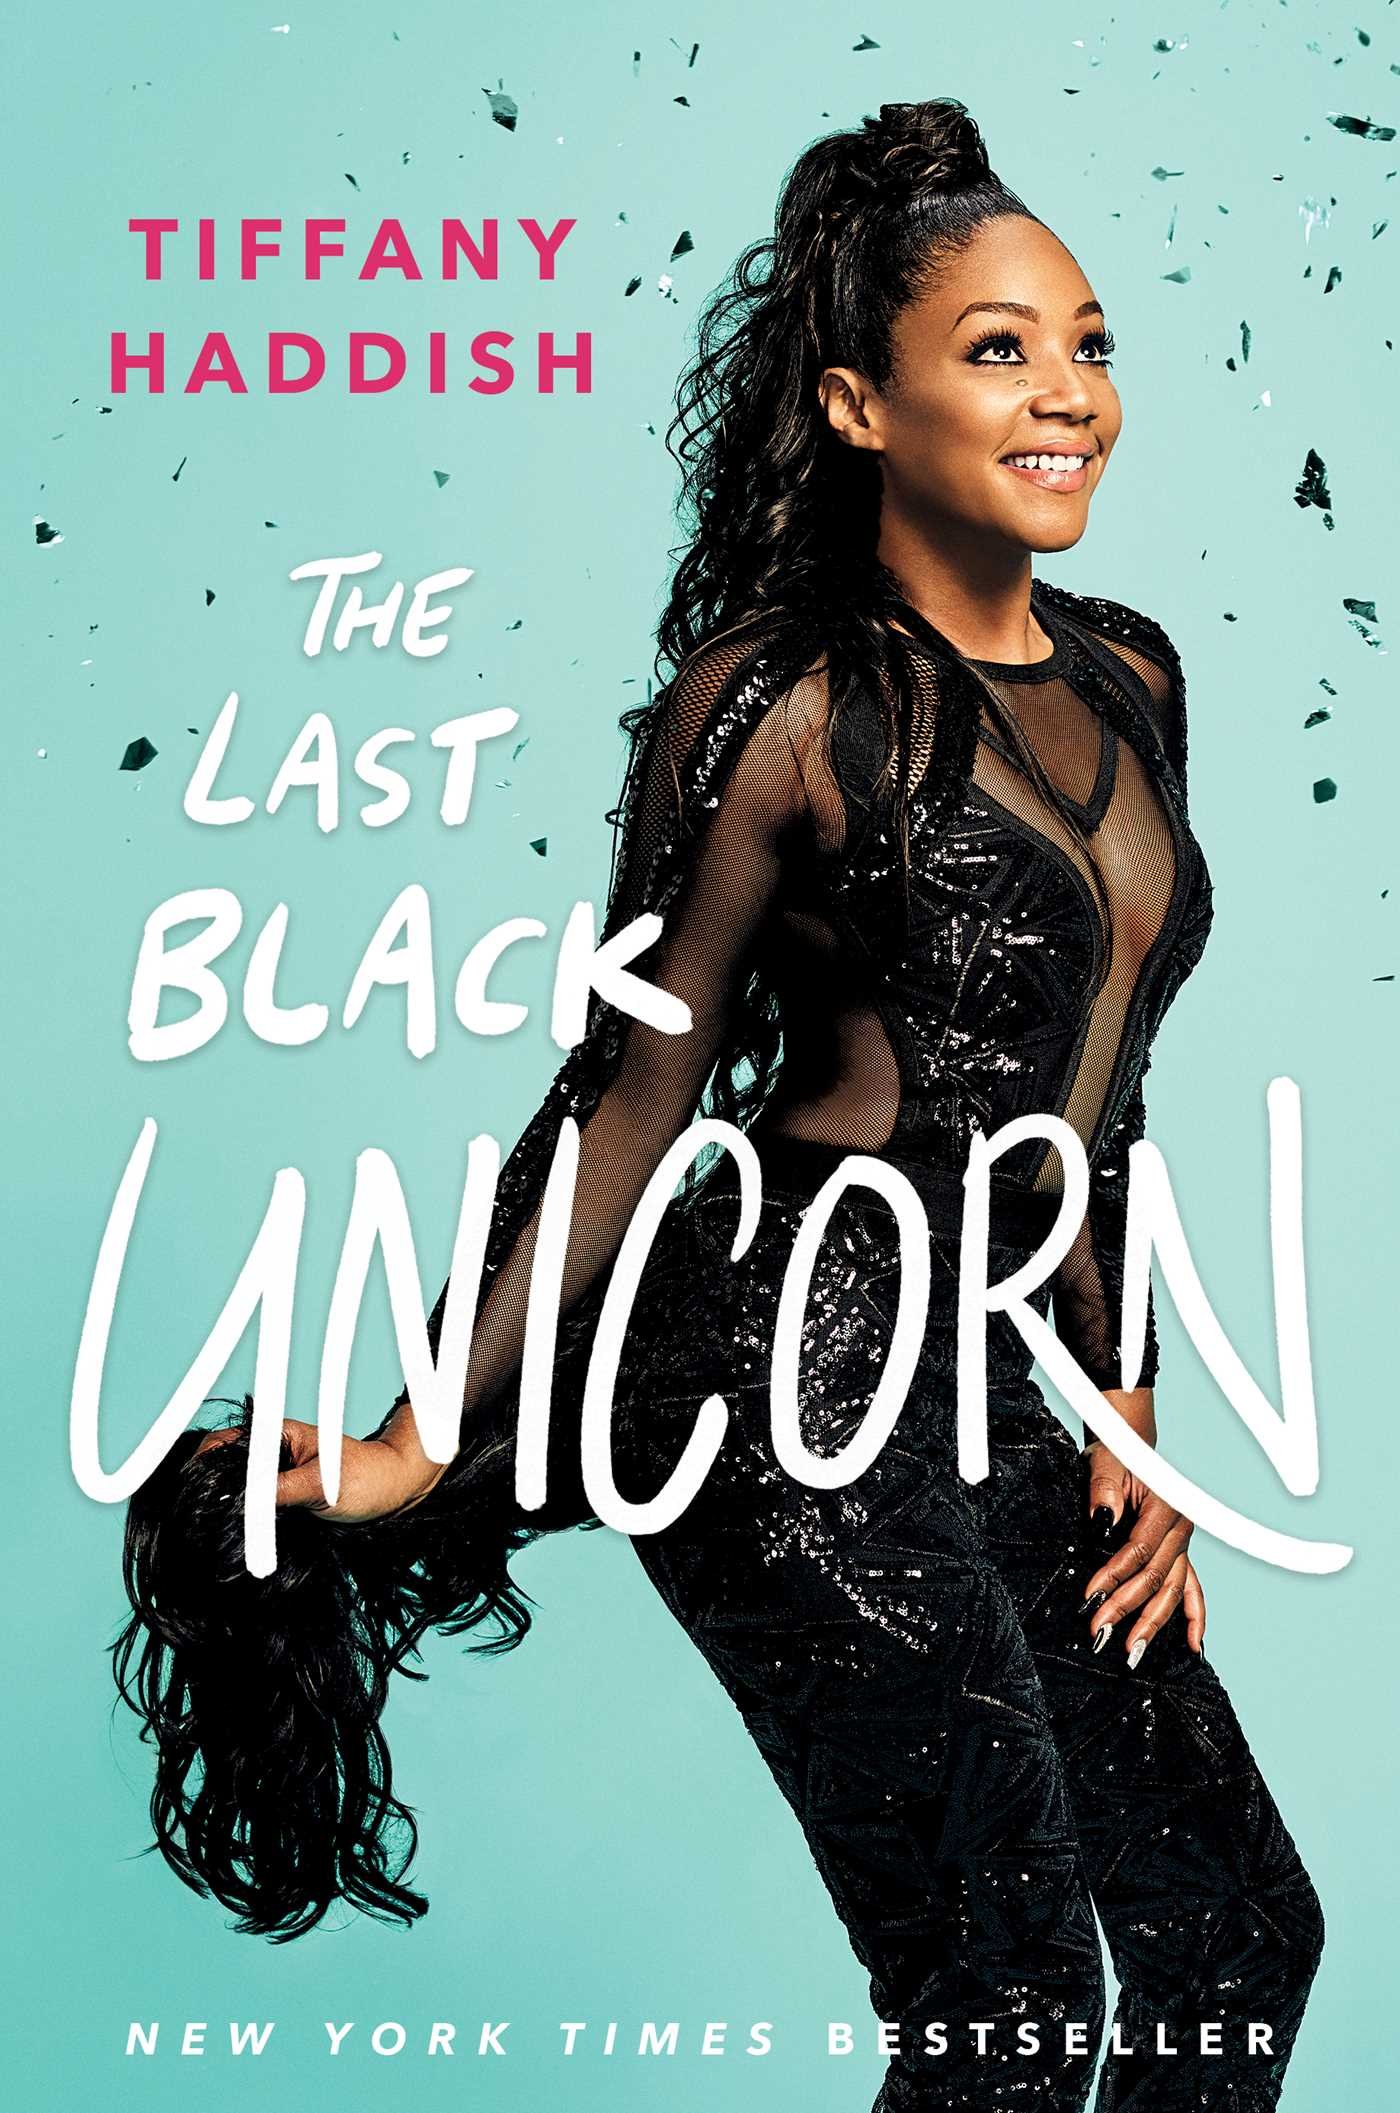 Book Cover The Last Black Unicorn